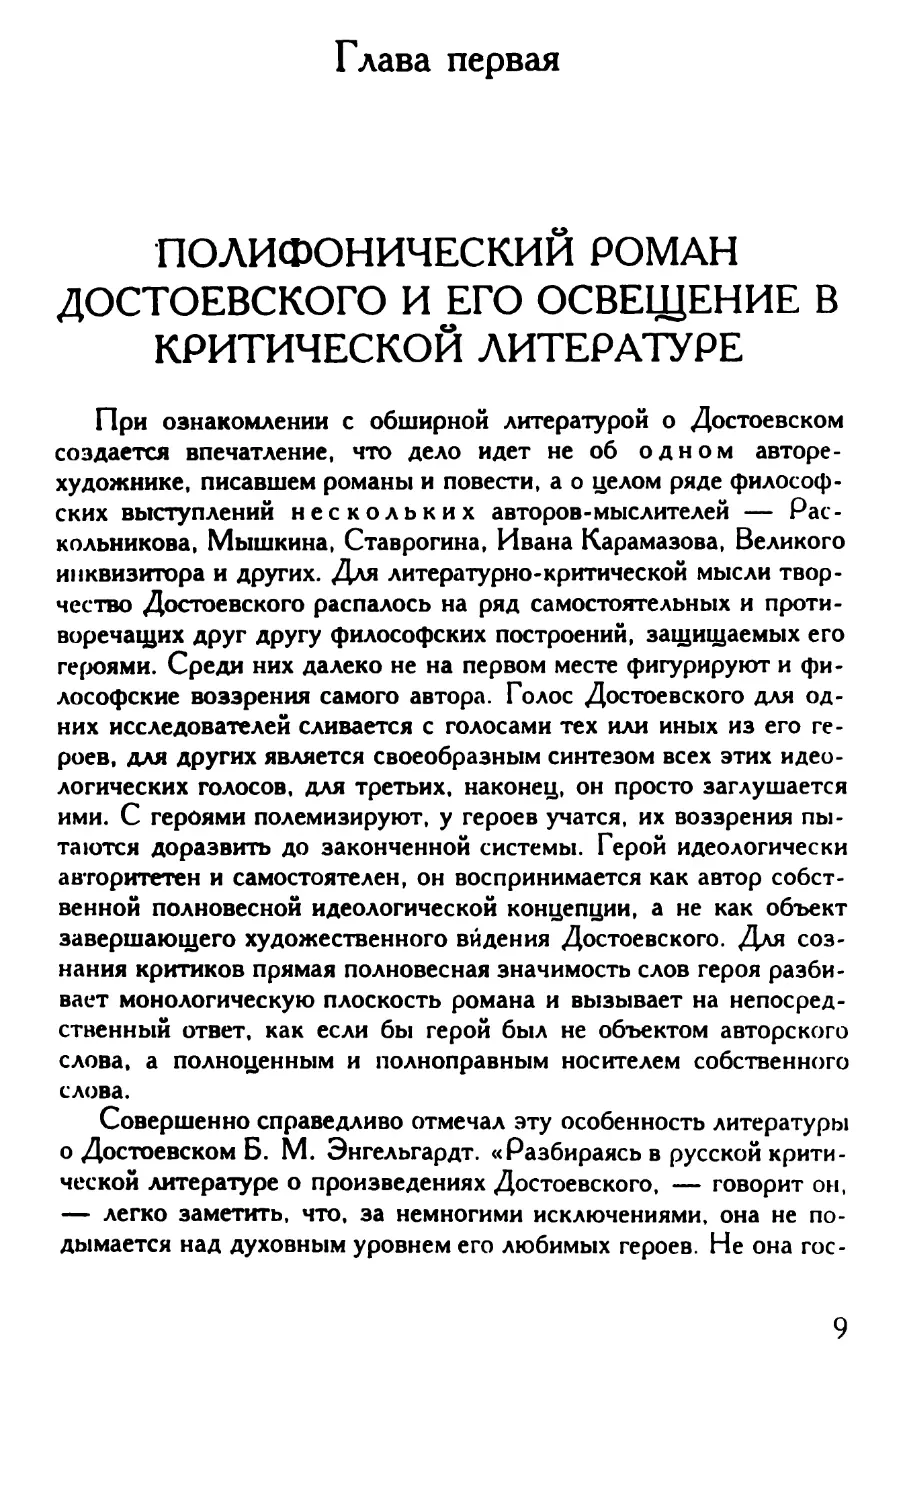 Глава первая. Полифонический роман Достоевского и его освещение в критической литературе